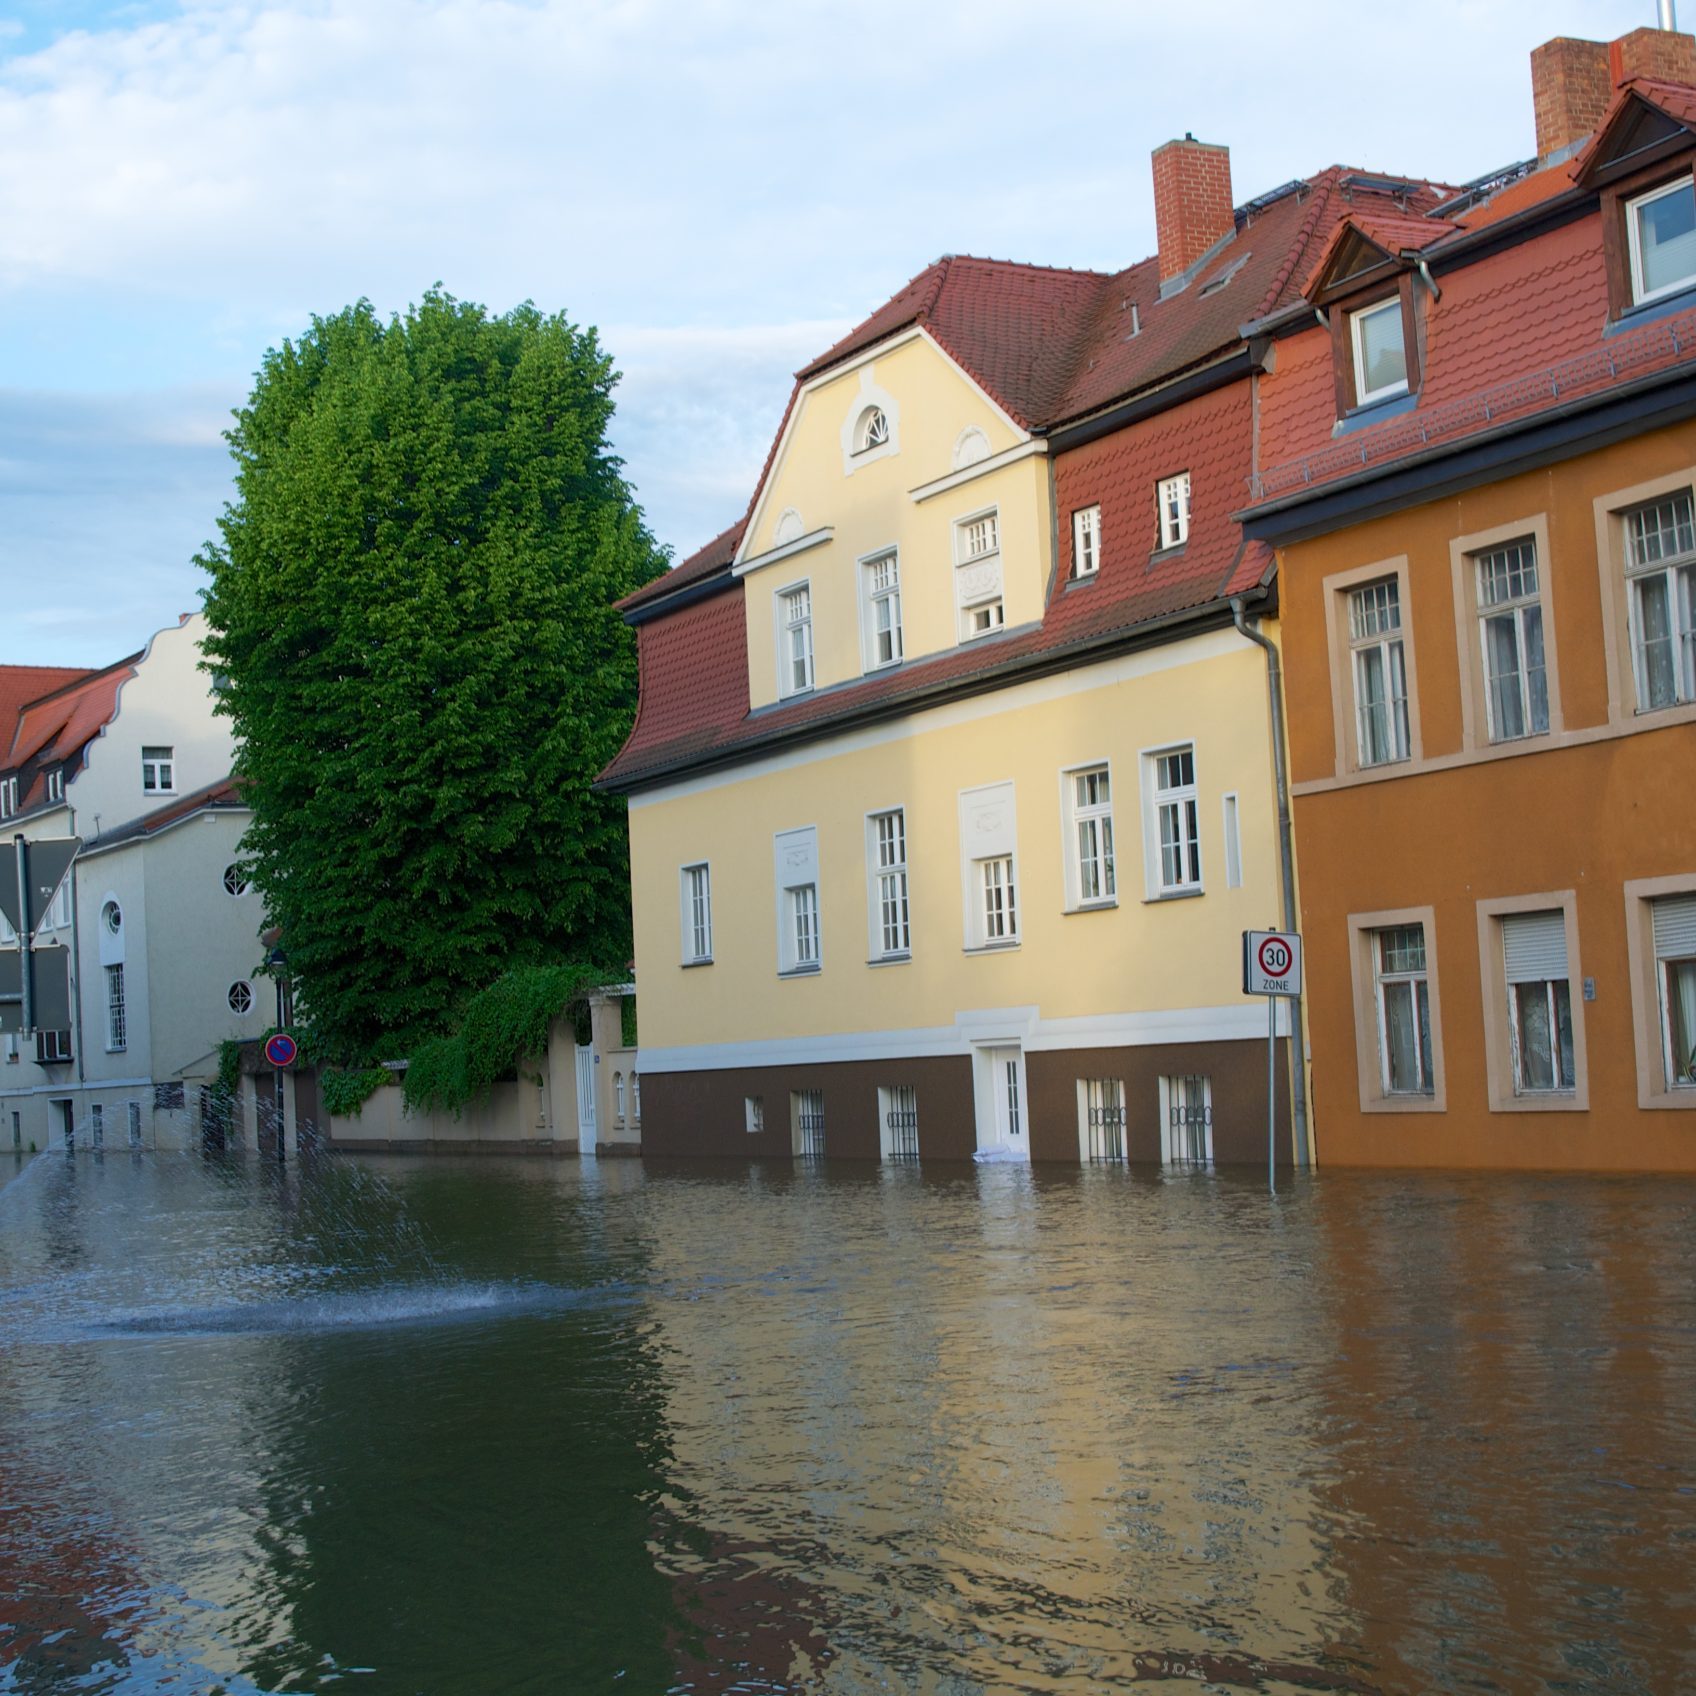 Das Bild zeigt eine überflutete Straße während des Hochwassers in Halle 2013. Das Wasser steht ca. einen halben Meter hoch und verdeckt die Straße komplett. Im Hintergrund steht eine Häuserreihe und ein Baum.